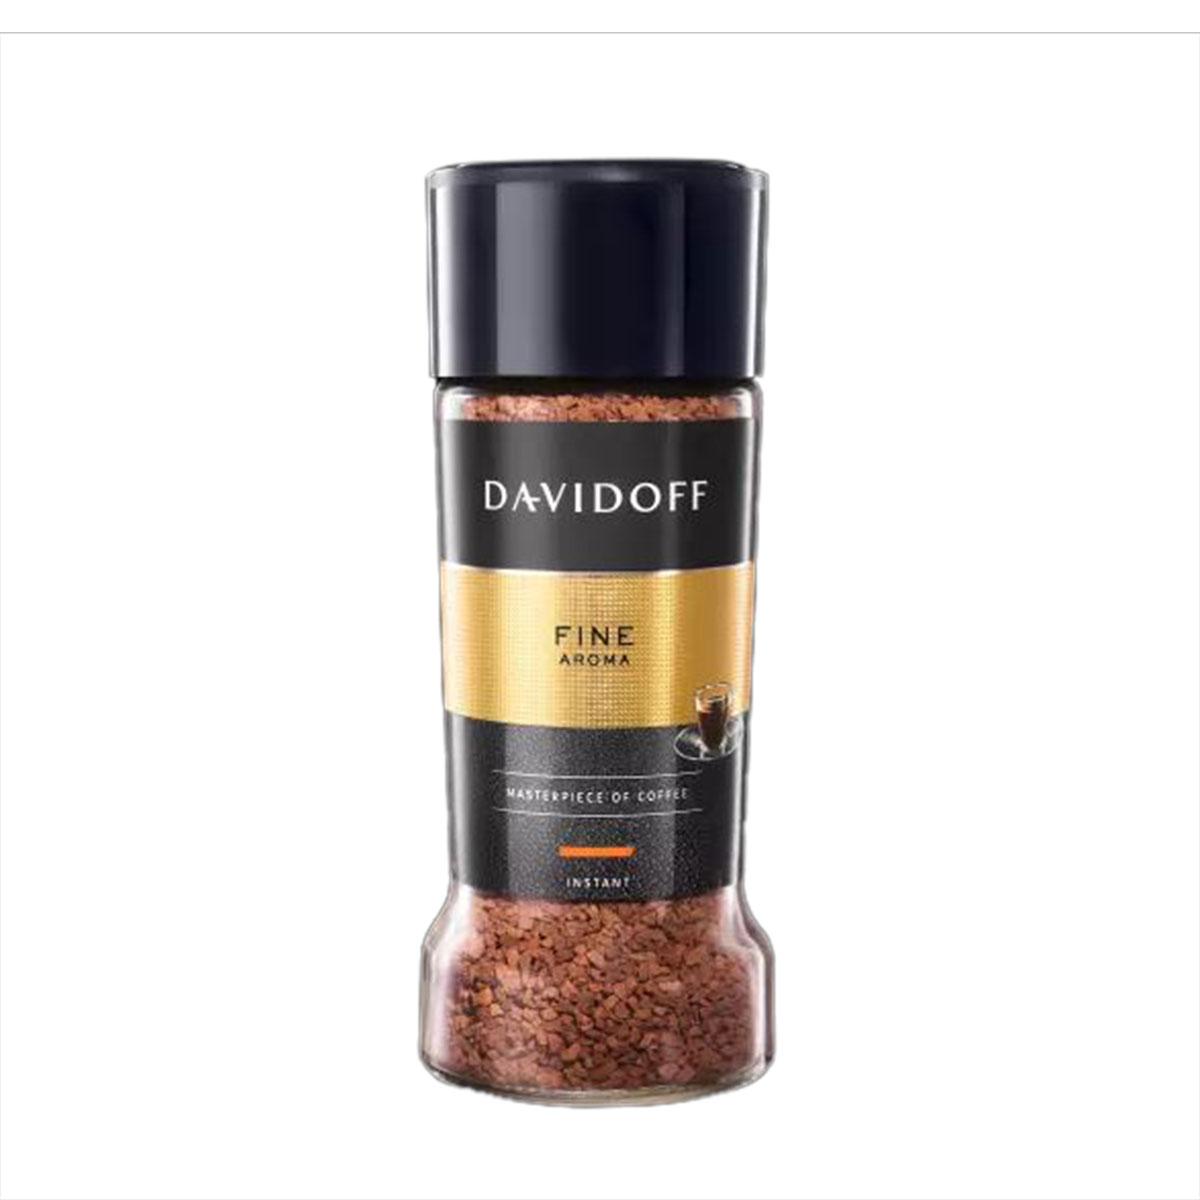 Davidoff Fine Aroma Coffee - 100gm